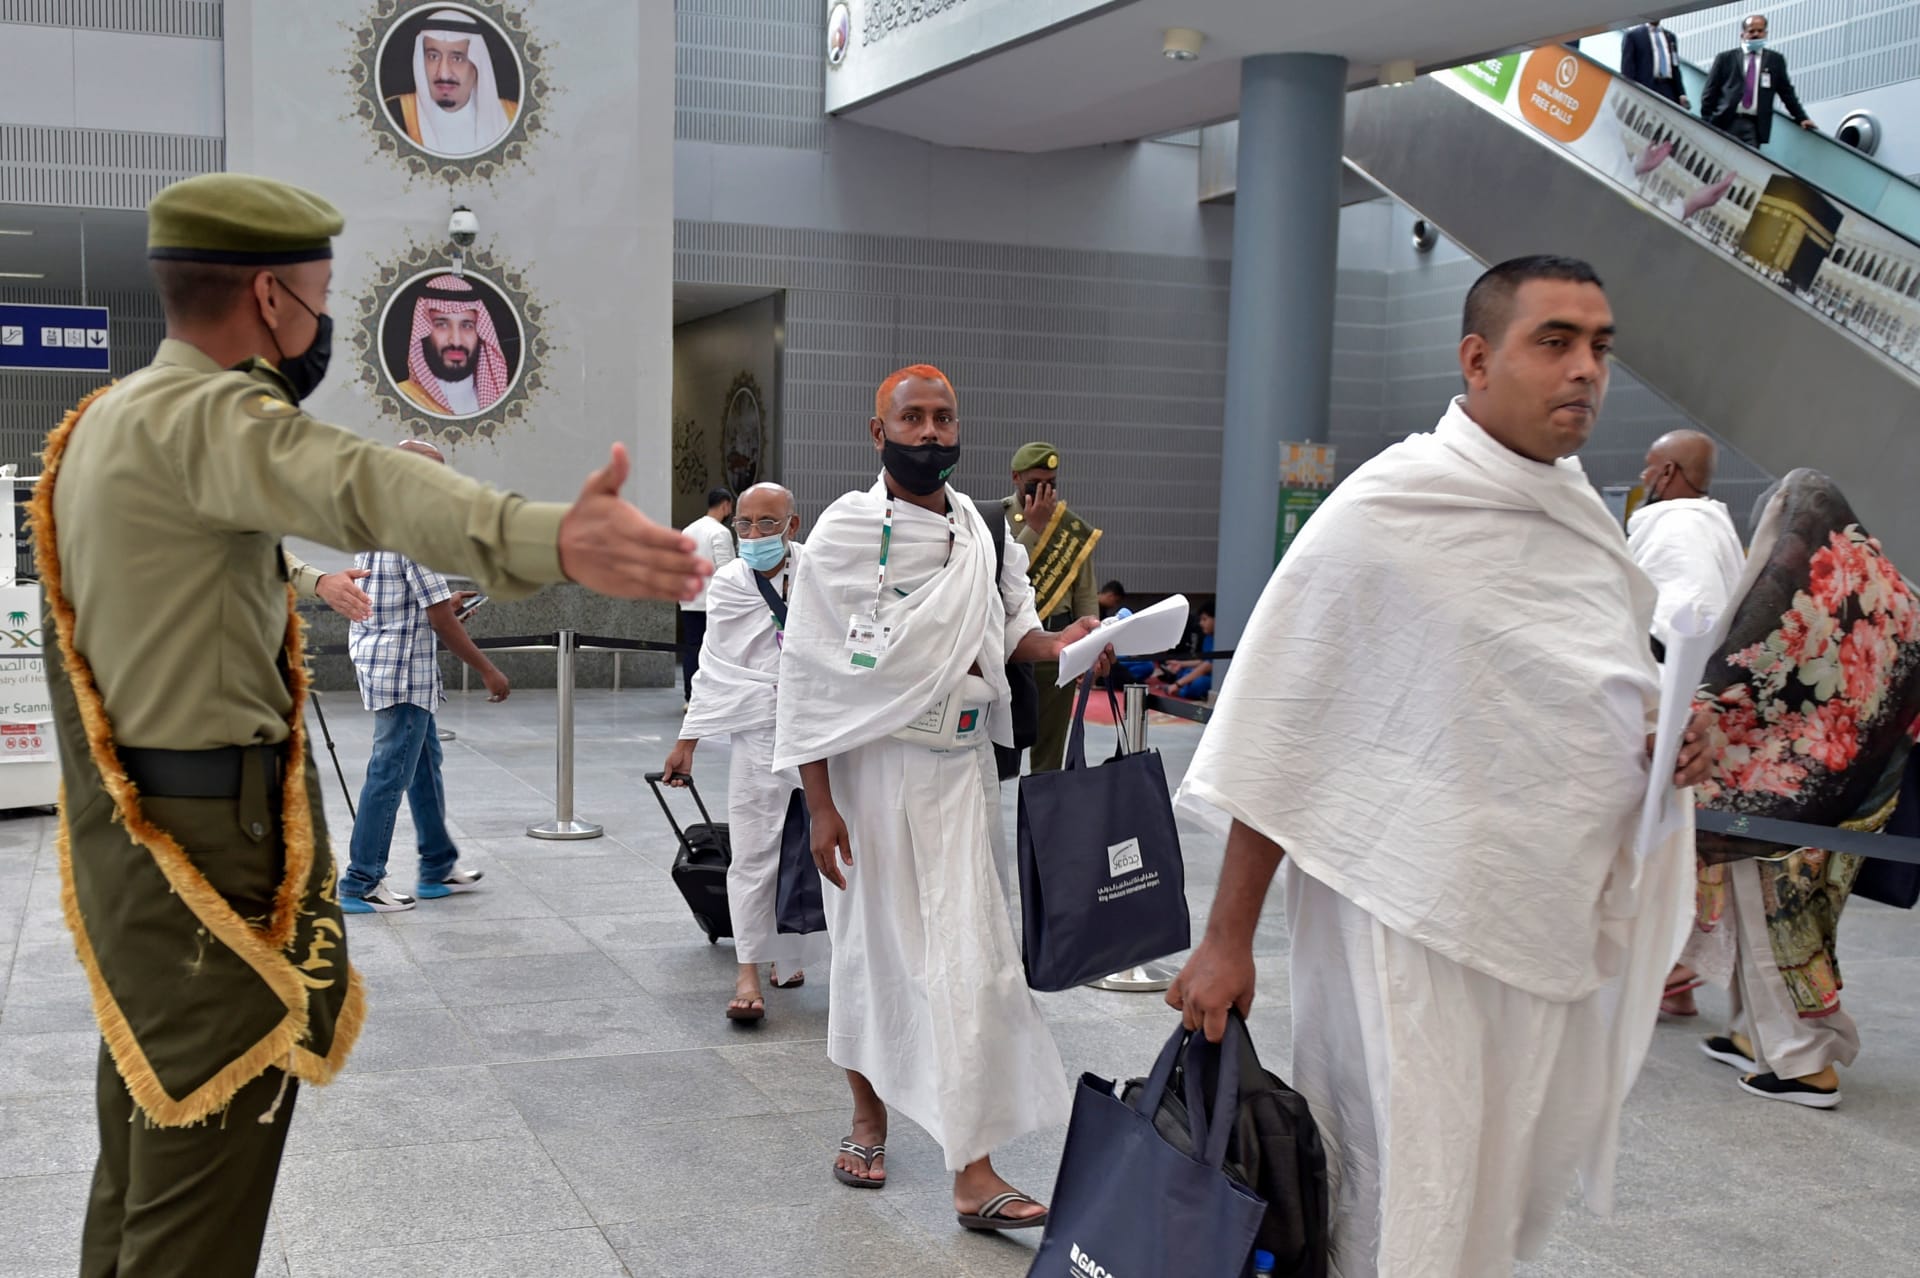 السعودية.. إلغاء جماعي للتأشيرات بمطار جدة يضع العلاقات مع دولة أفريقية تحت الضوء